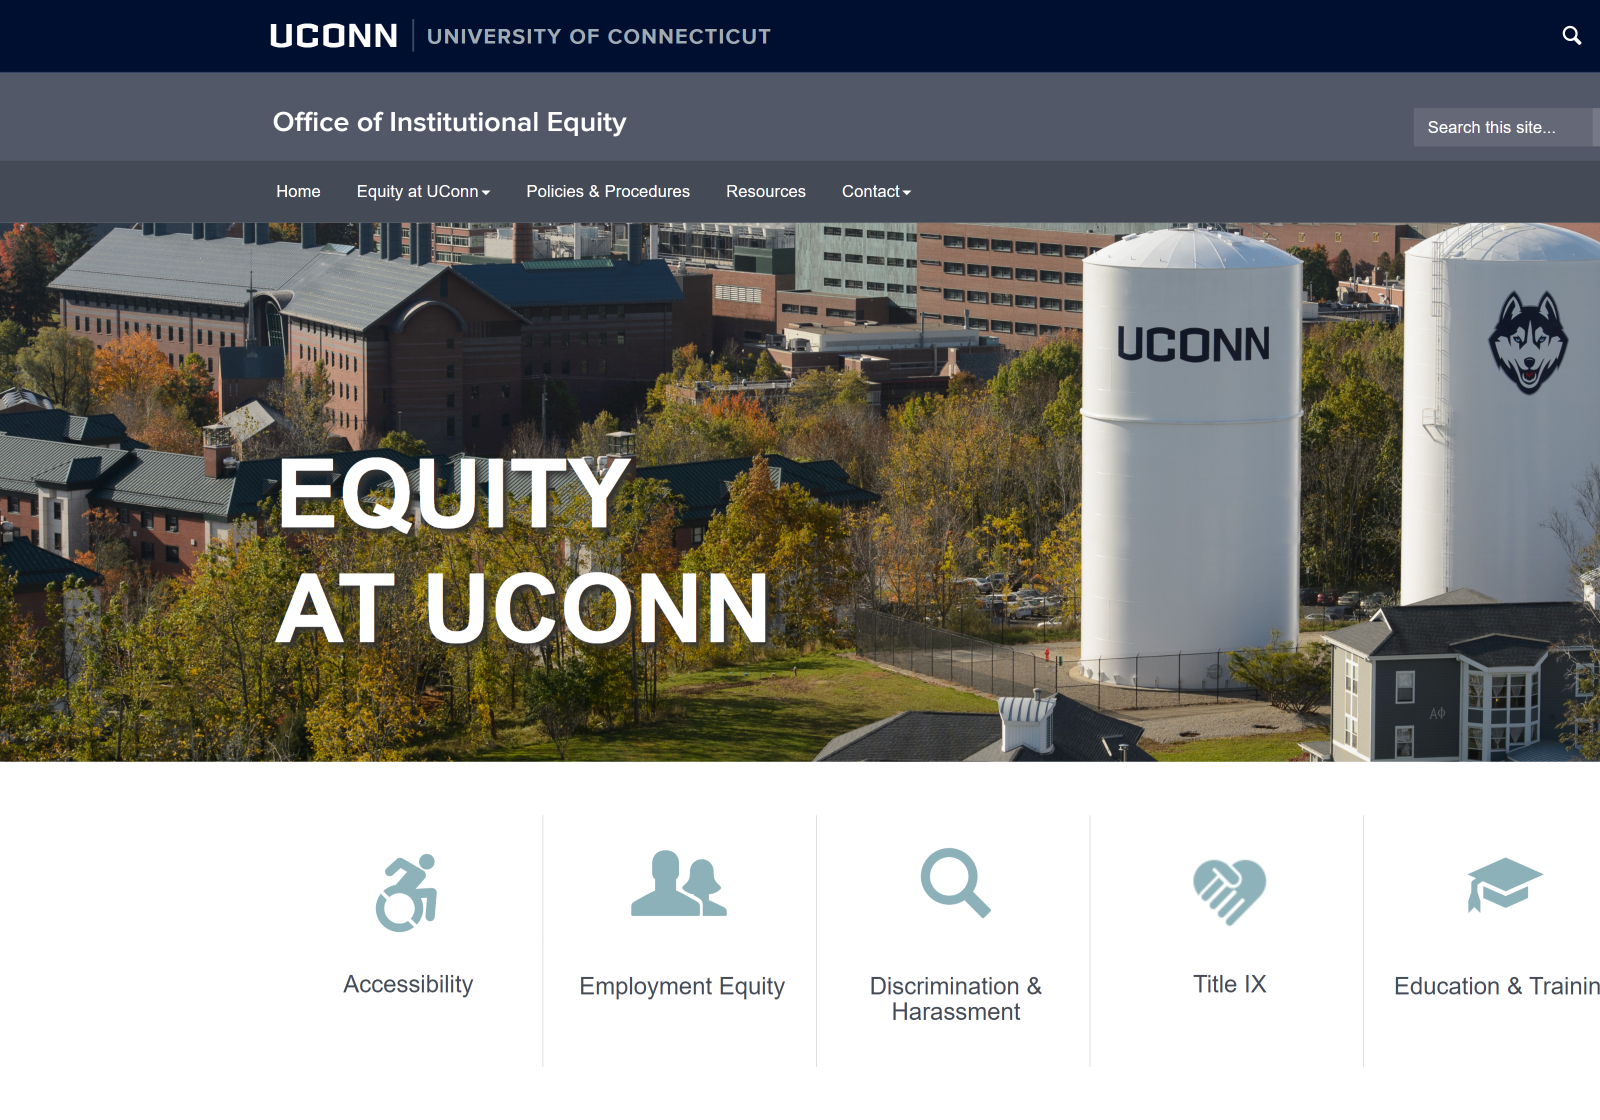 Desktop view of the Equity website